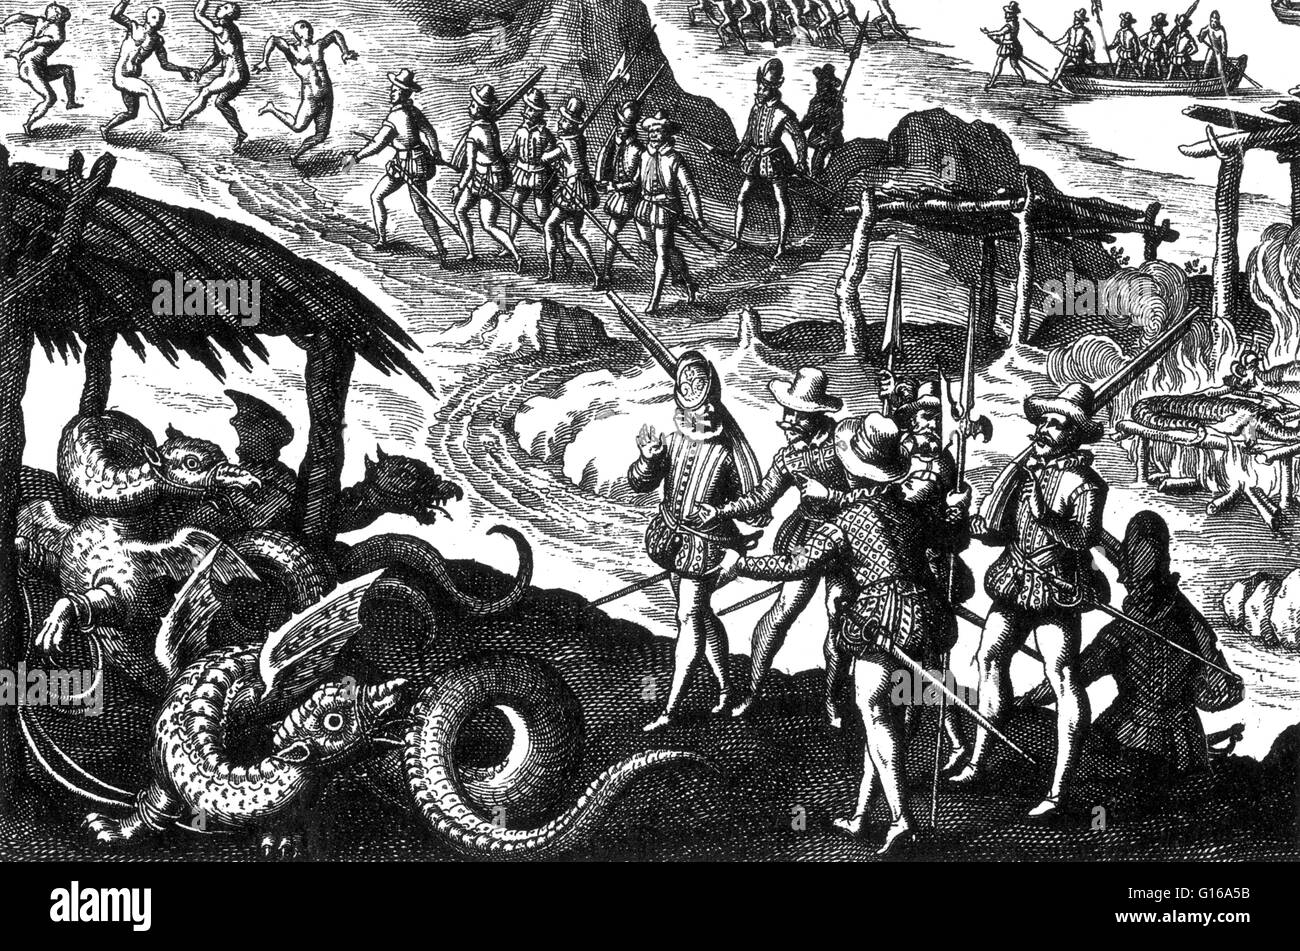 Die amerikanischen Ureinwohner Rösten Drachen, 16. Jahrhundert. Theodor de Bry Kupferstich, beschreibt der spanischen Ankunft in Amerika zu entdecken, dass die Indianer auf Drachen leben. Man ist im Hintergrund, rösten, während die Spanier in Erstaunen über den Blick Stockfoto